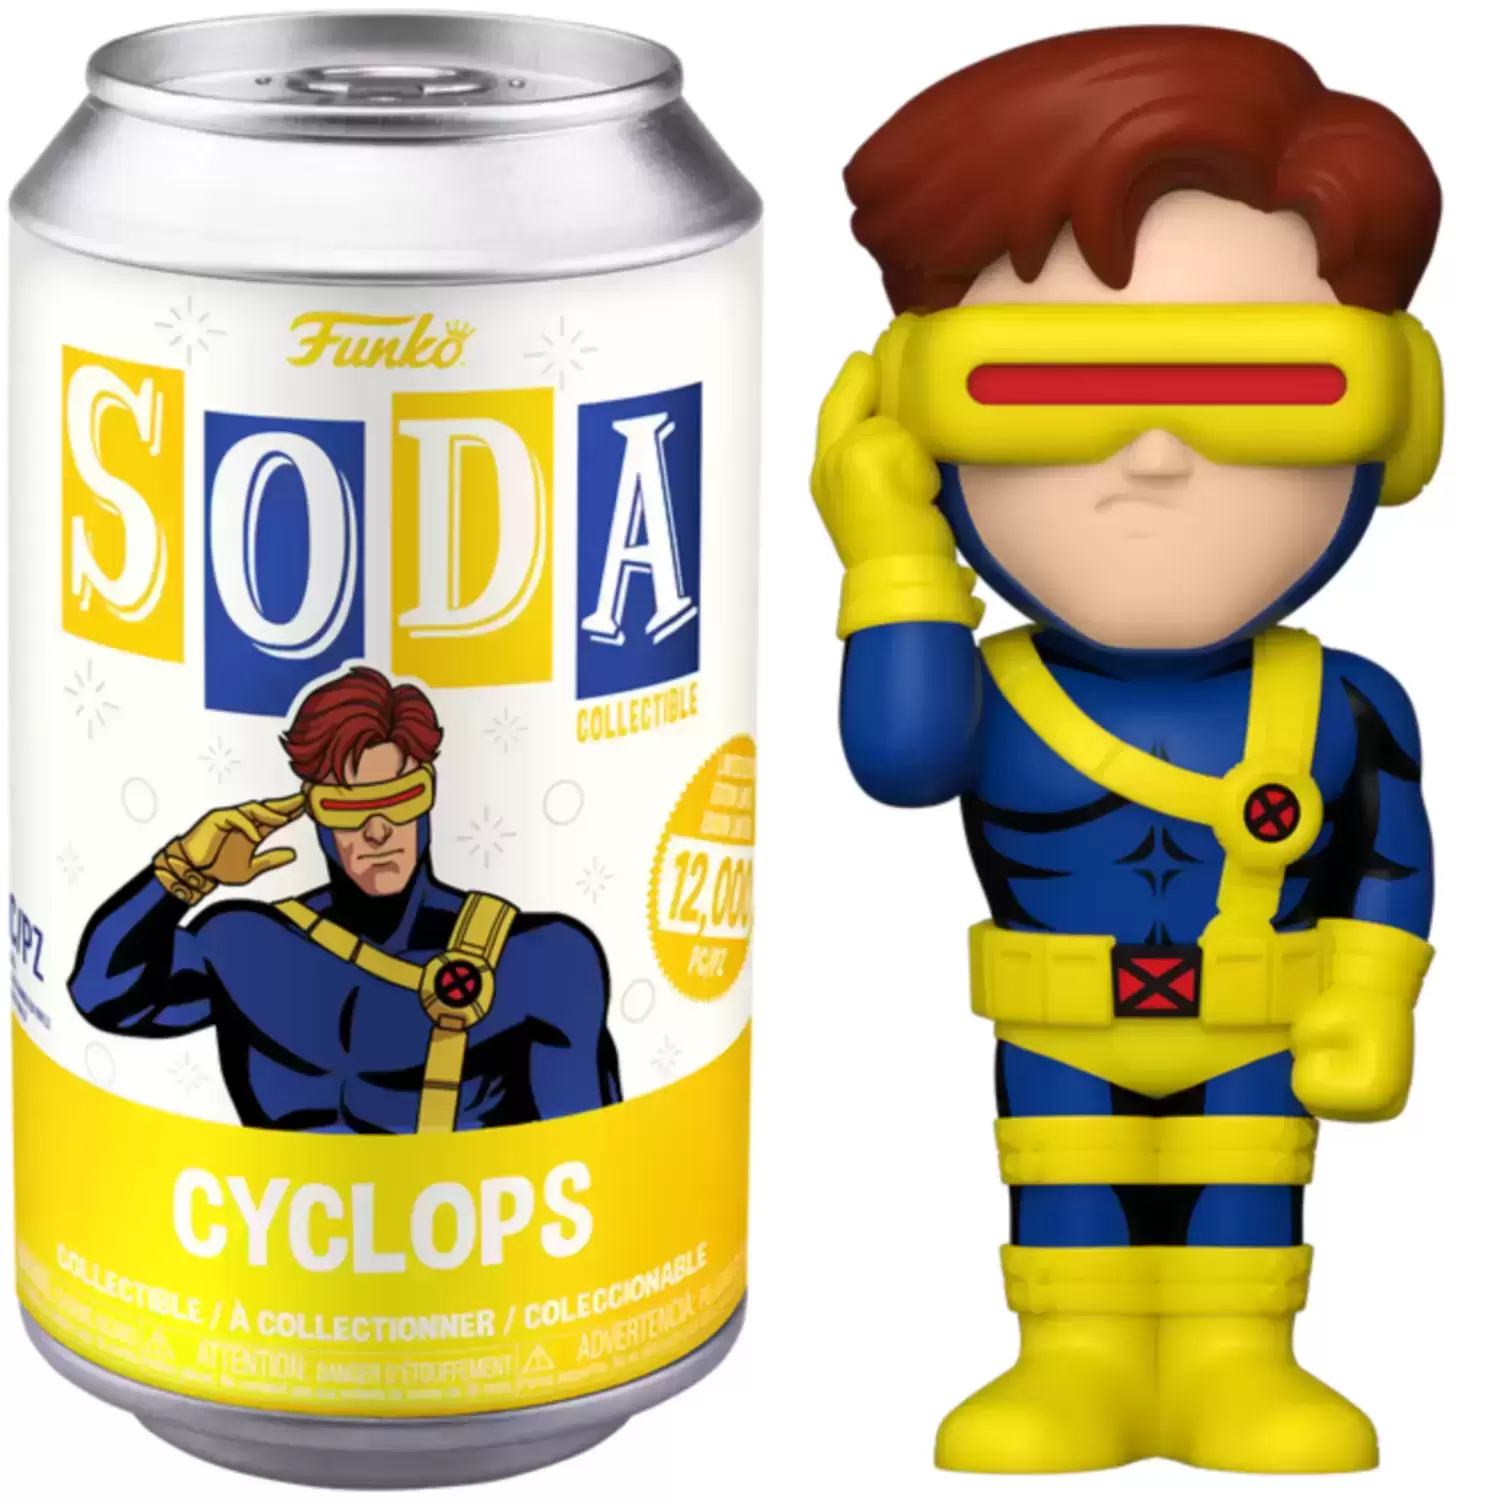 Vinyl Soda! - Cyclops